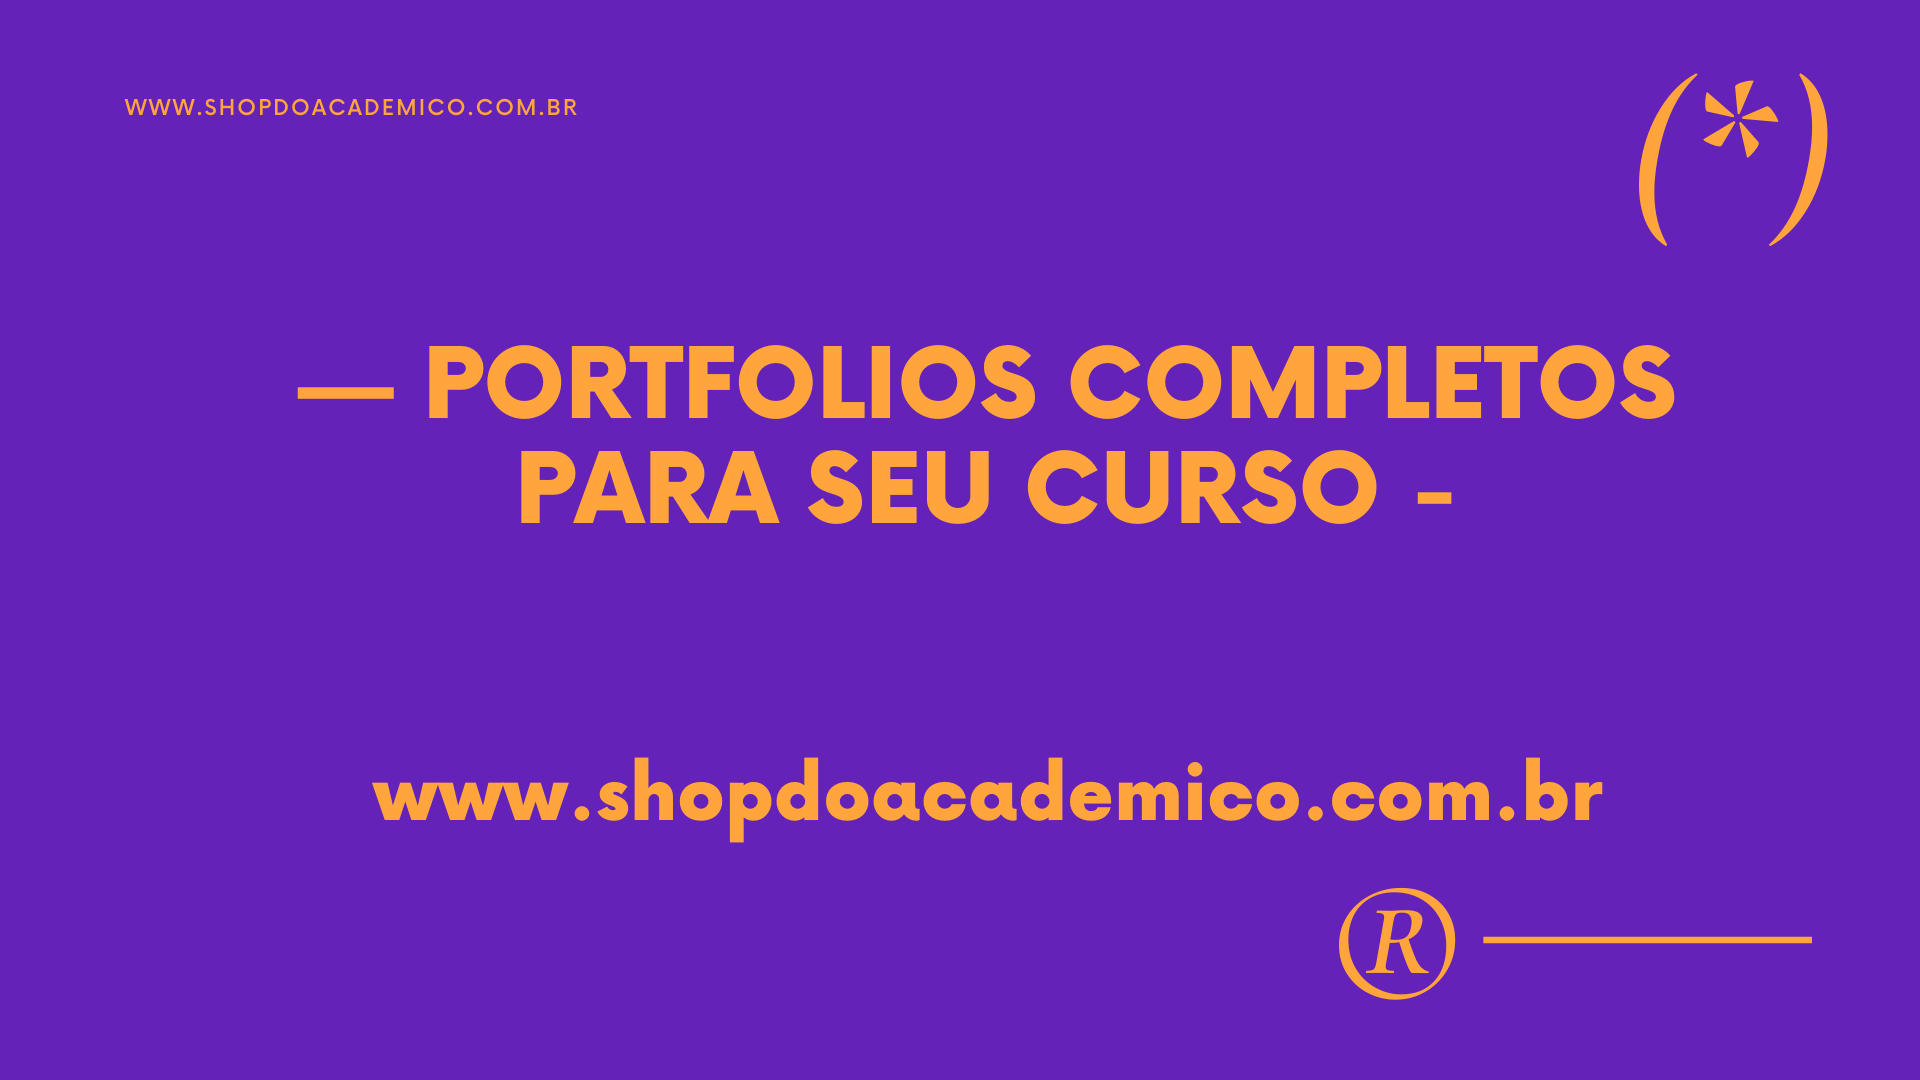 shopdoacademico.com.br